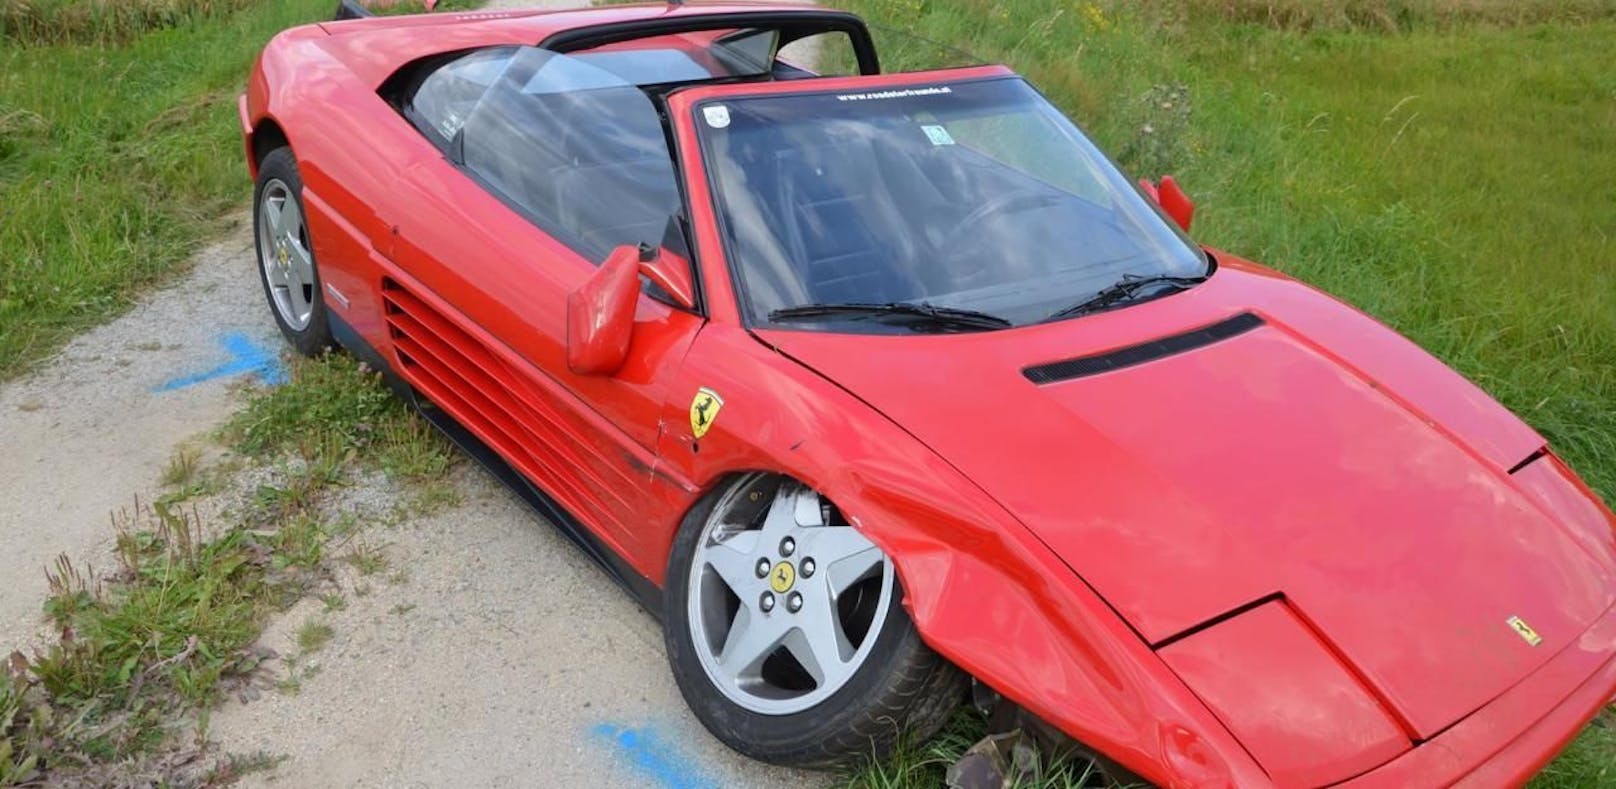 Der Ferrari wurde stark beschädigt, ebenso wie ein beteiligter BMW.